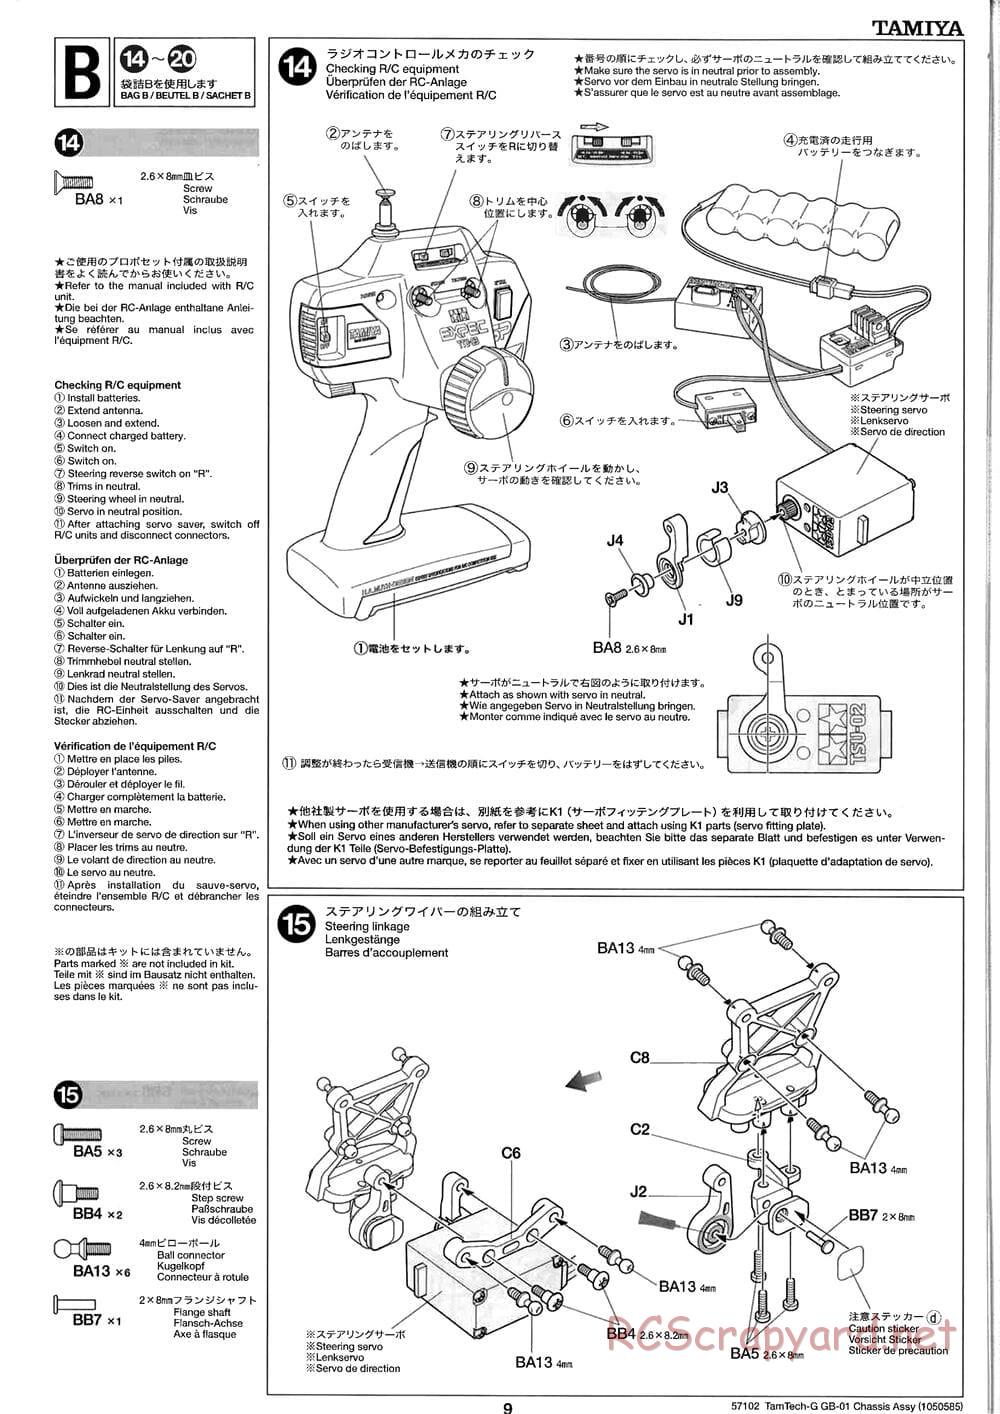 Tamiya - GB-01 Chassis - Manual - Page 9